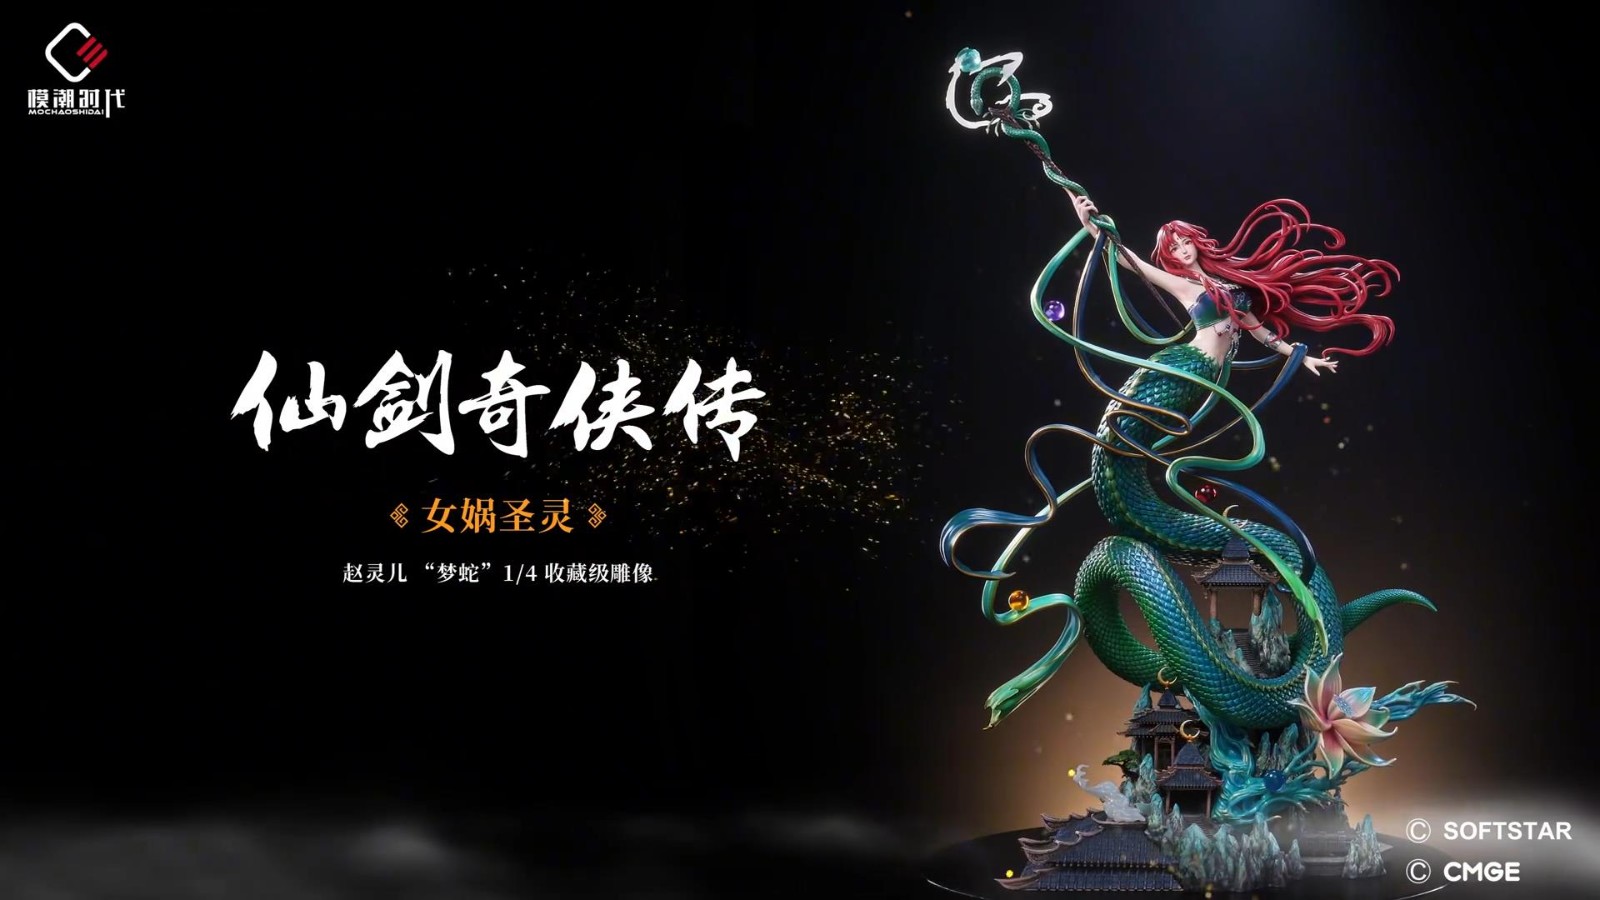 《仙剑》赵灵儿梦蛇收藏级雕像太好看了 5月16日发售